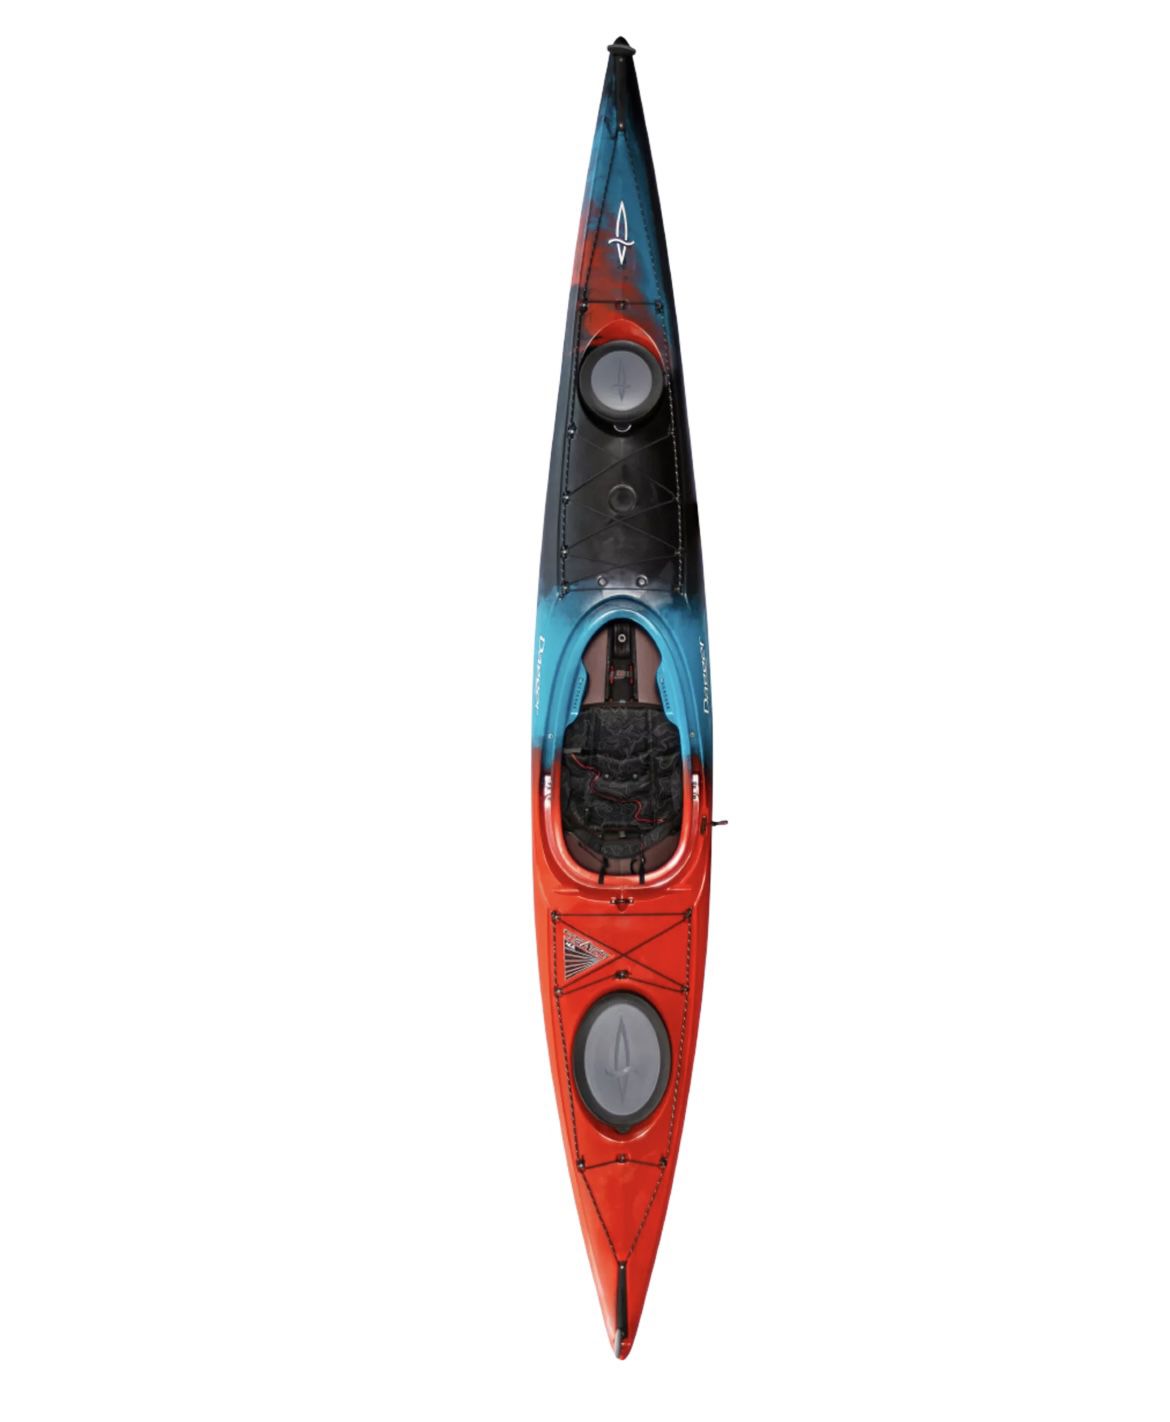 Dagger Kayak Stratos 12.5 large